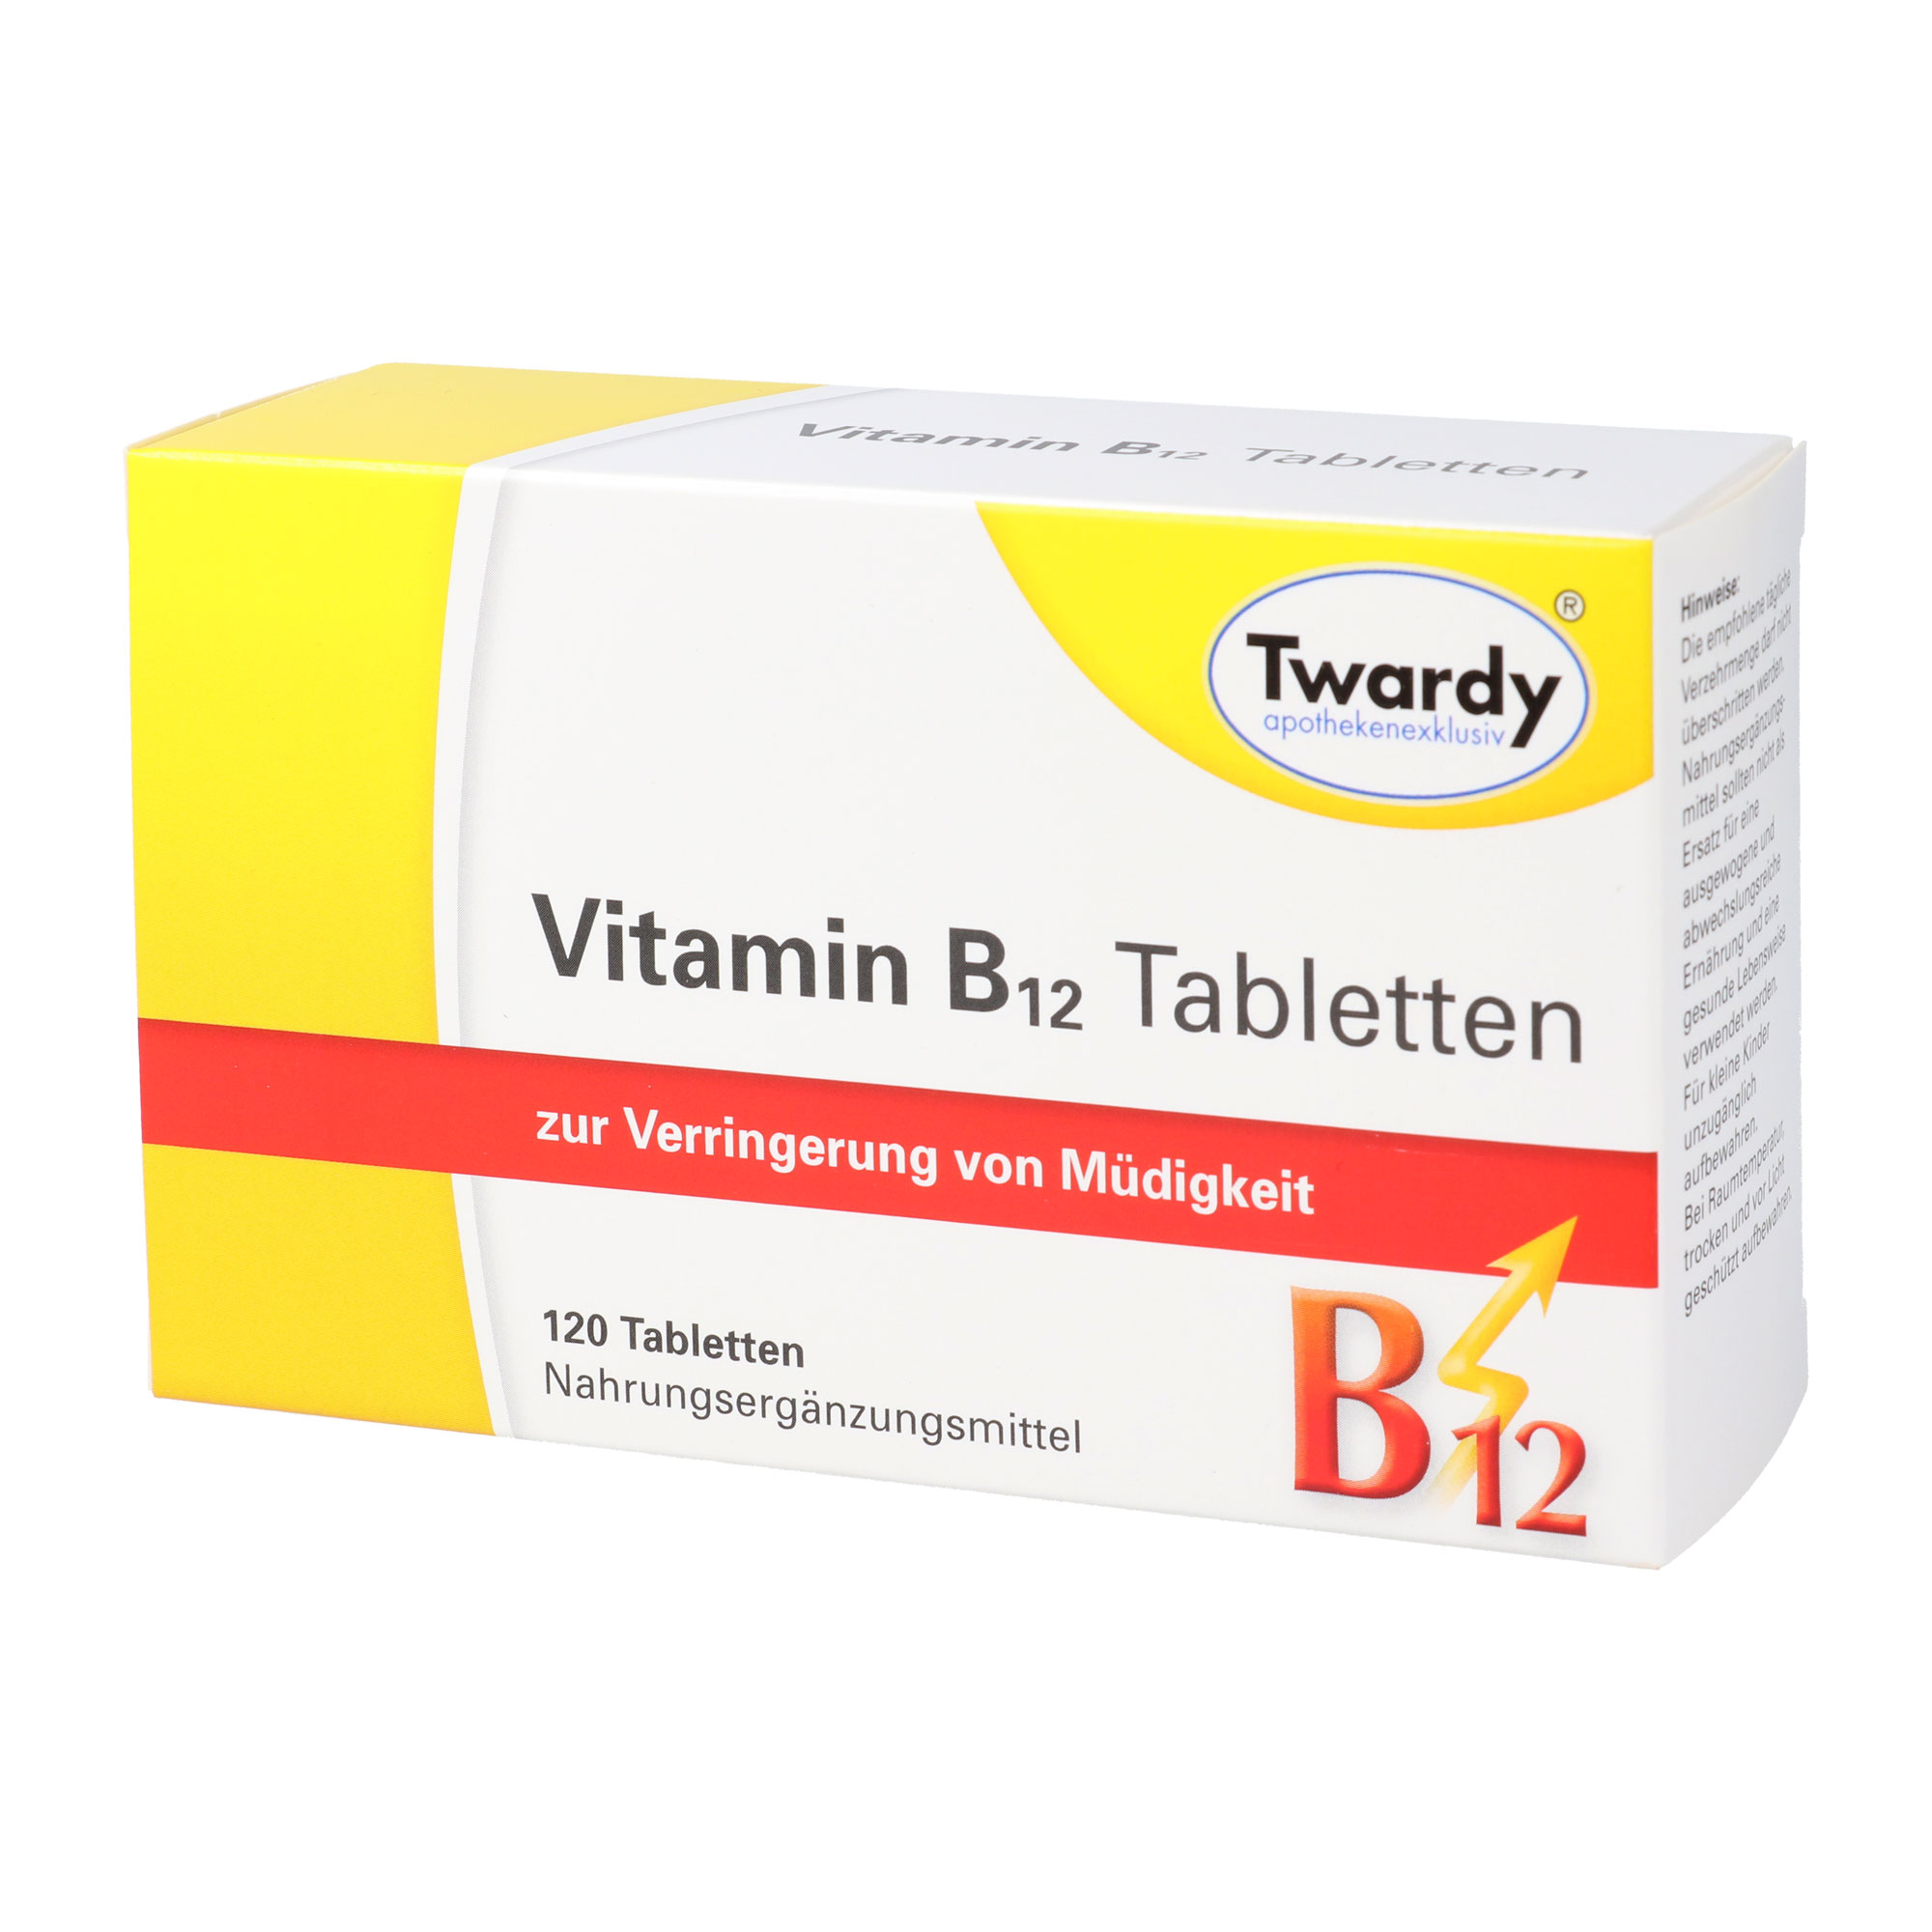 Nahrungsergänzungsmittel mit Vitamin B12. Zur Verringerung von Müdigkeit.